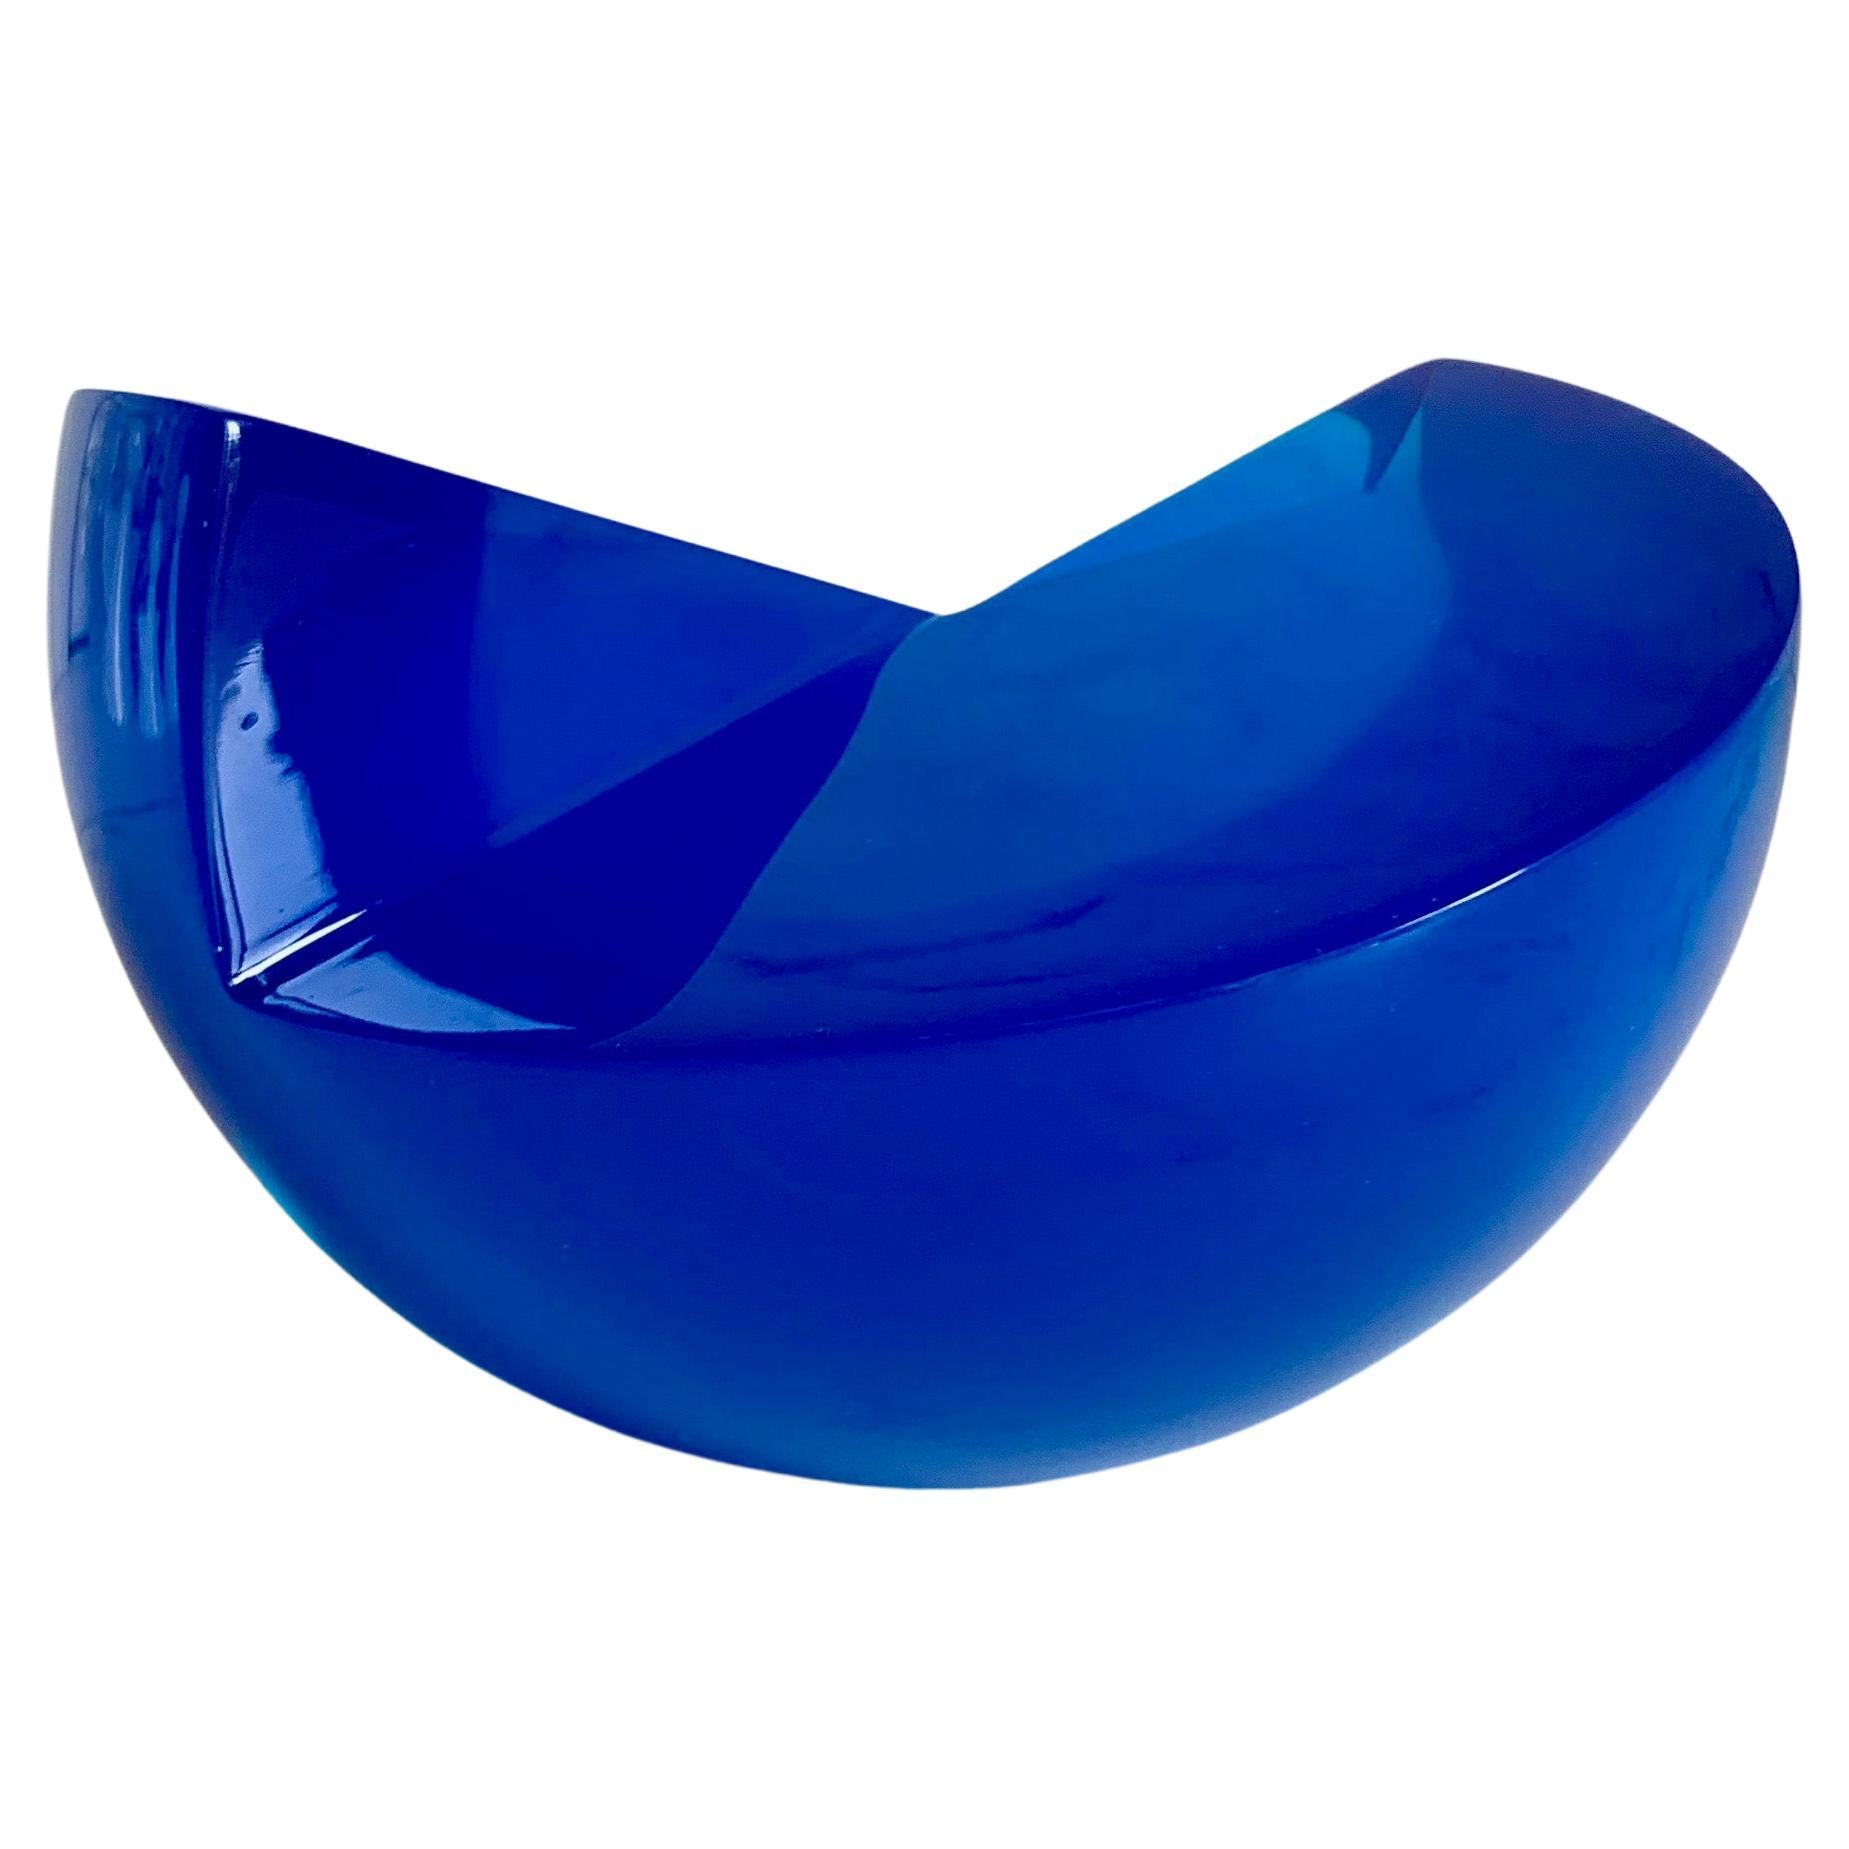 Sculpture semi-sphérique bleue en résine polie de Paola Valle